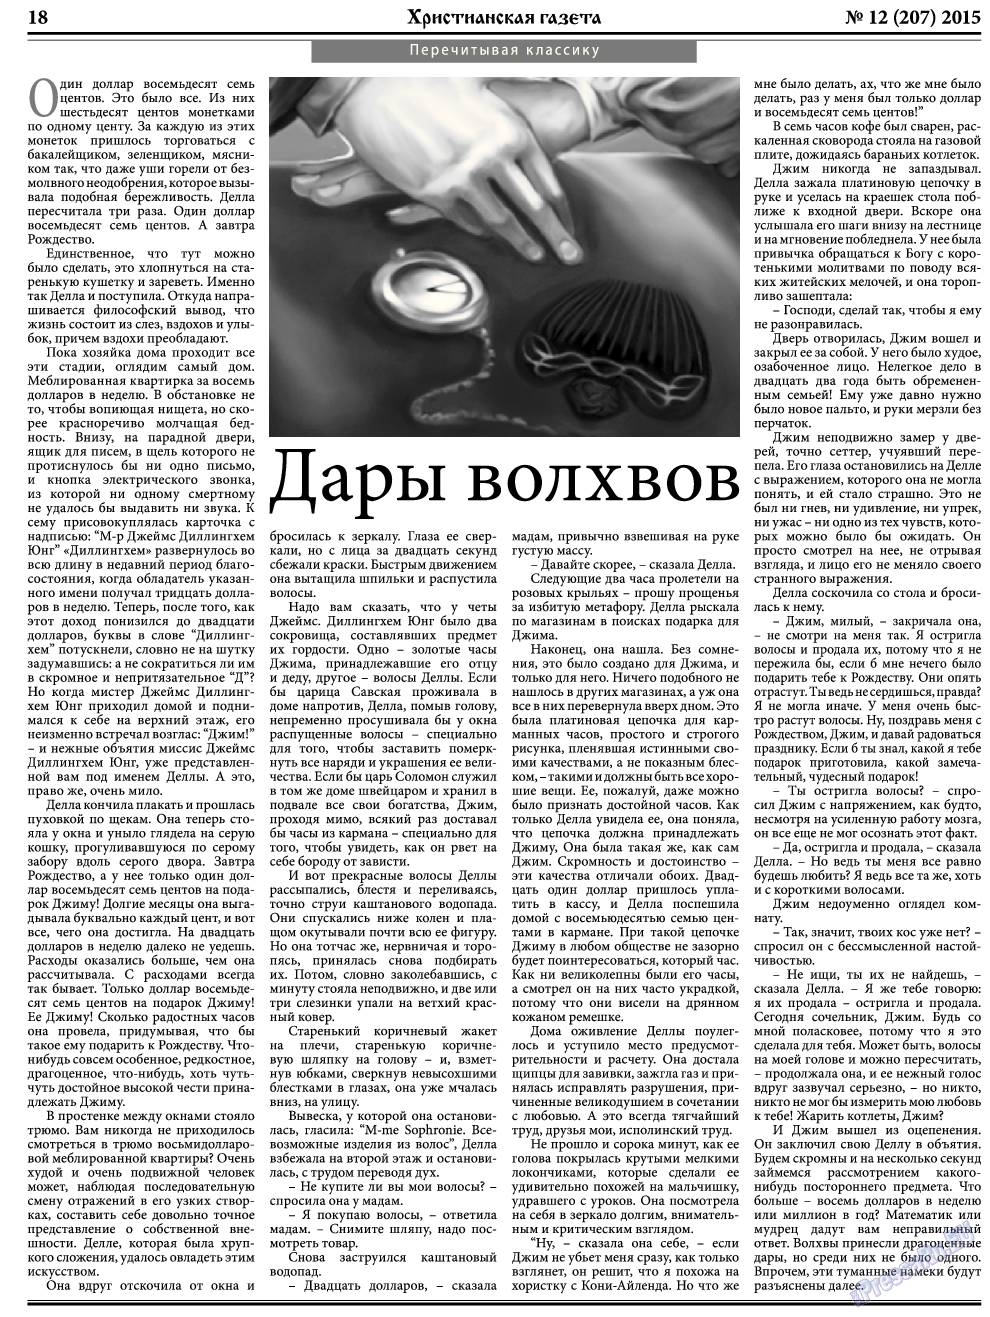 Христианская газета, газета. 2015 №12 стр.26